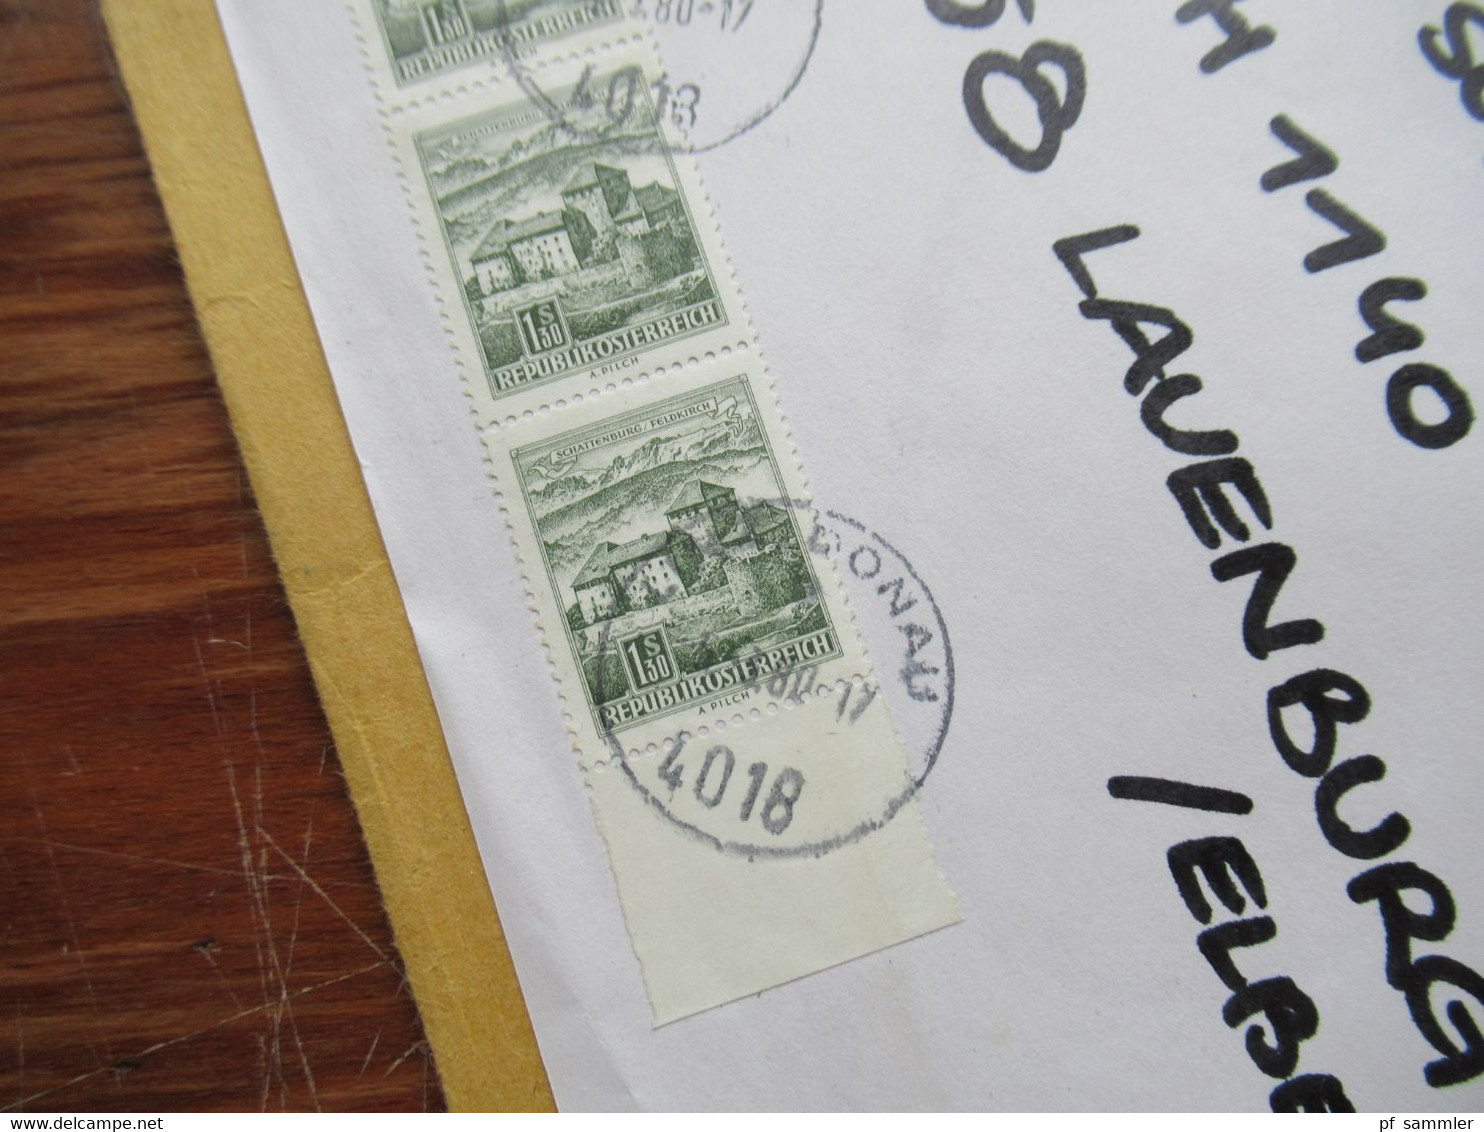 Österreich 1975 Freimarken in Einheiten auf großem Umschlag! Postgebühr bar bezahlt und AFS Pelikan it Wien